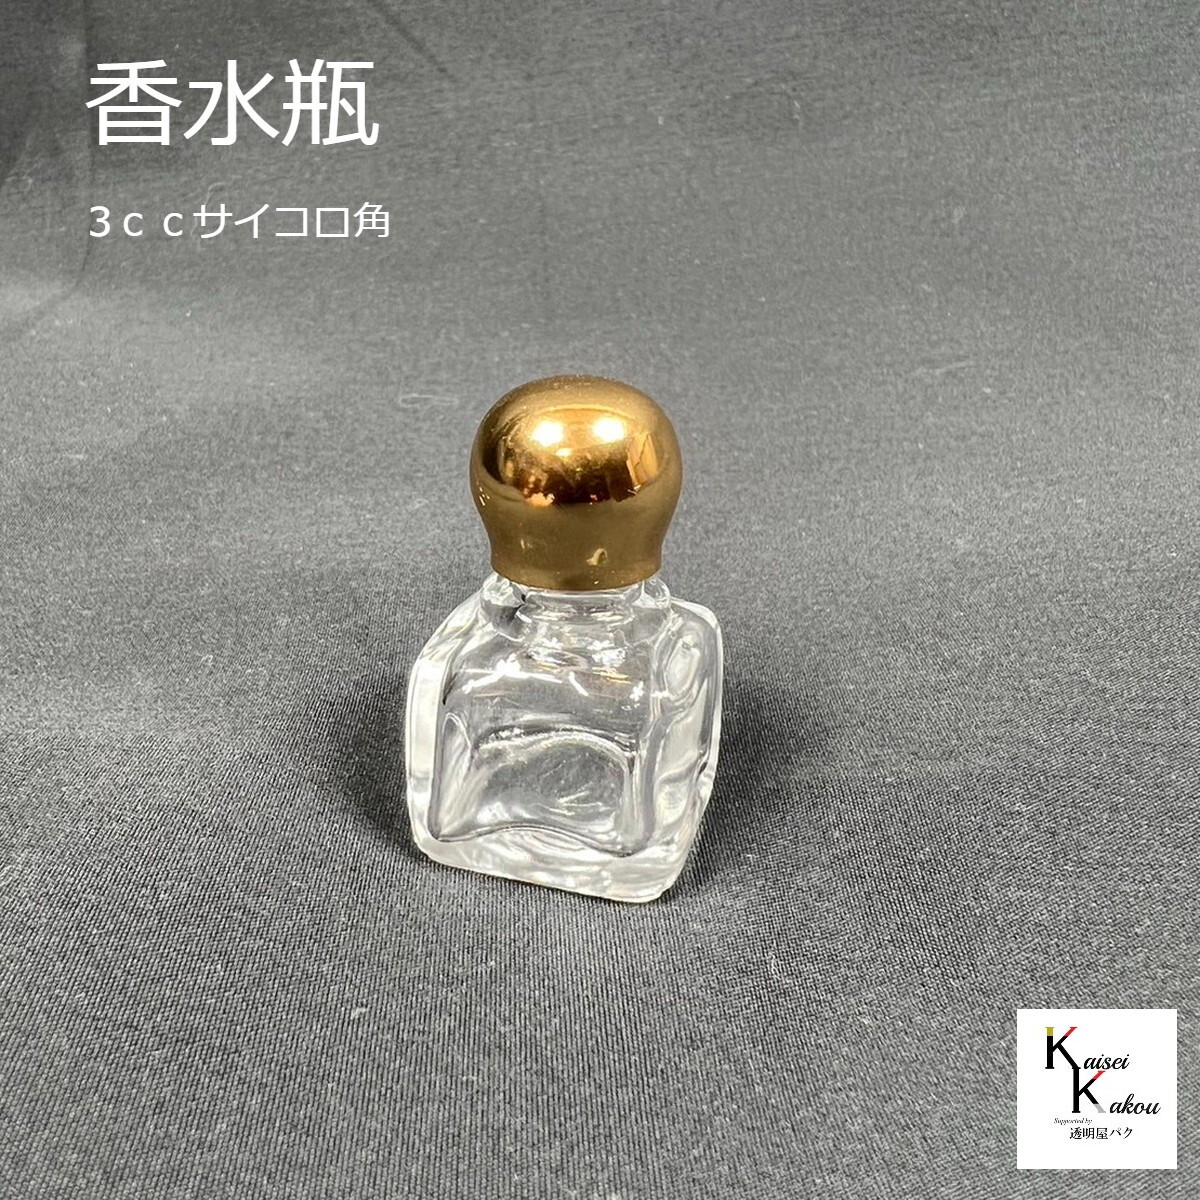 楽天市場】「ミニ香水瓶 3cc cube」 サイコロ 角 アトマイザー